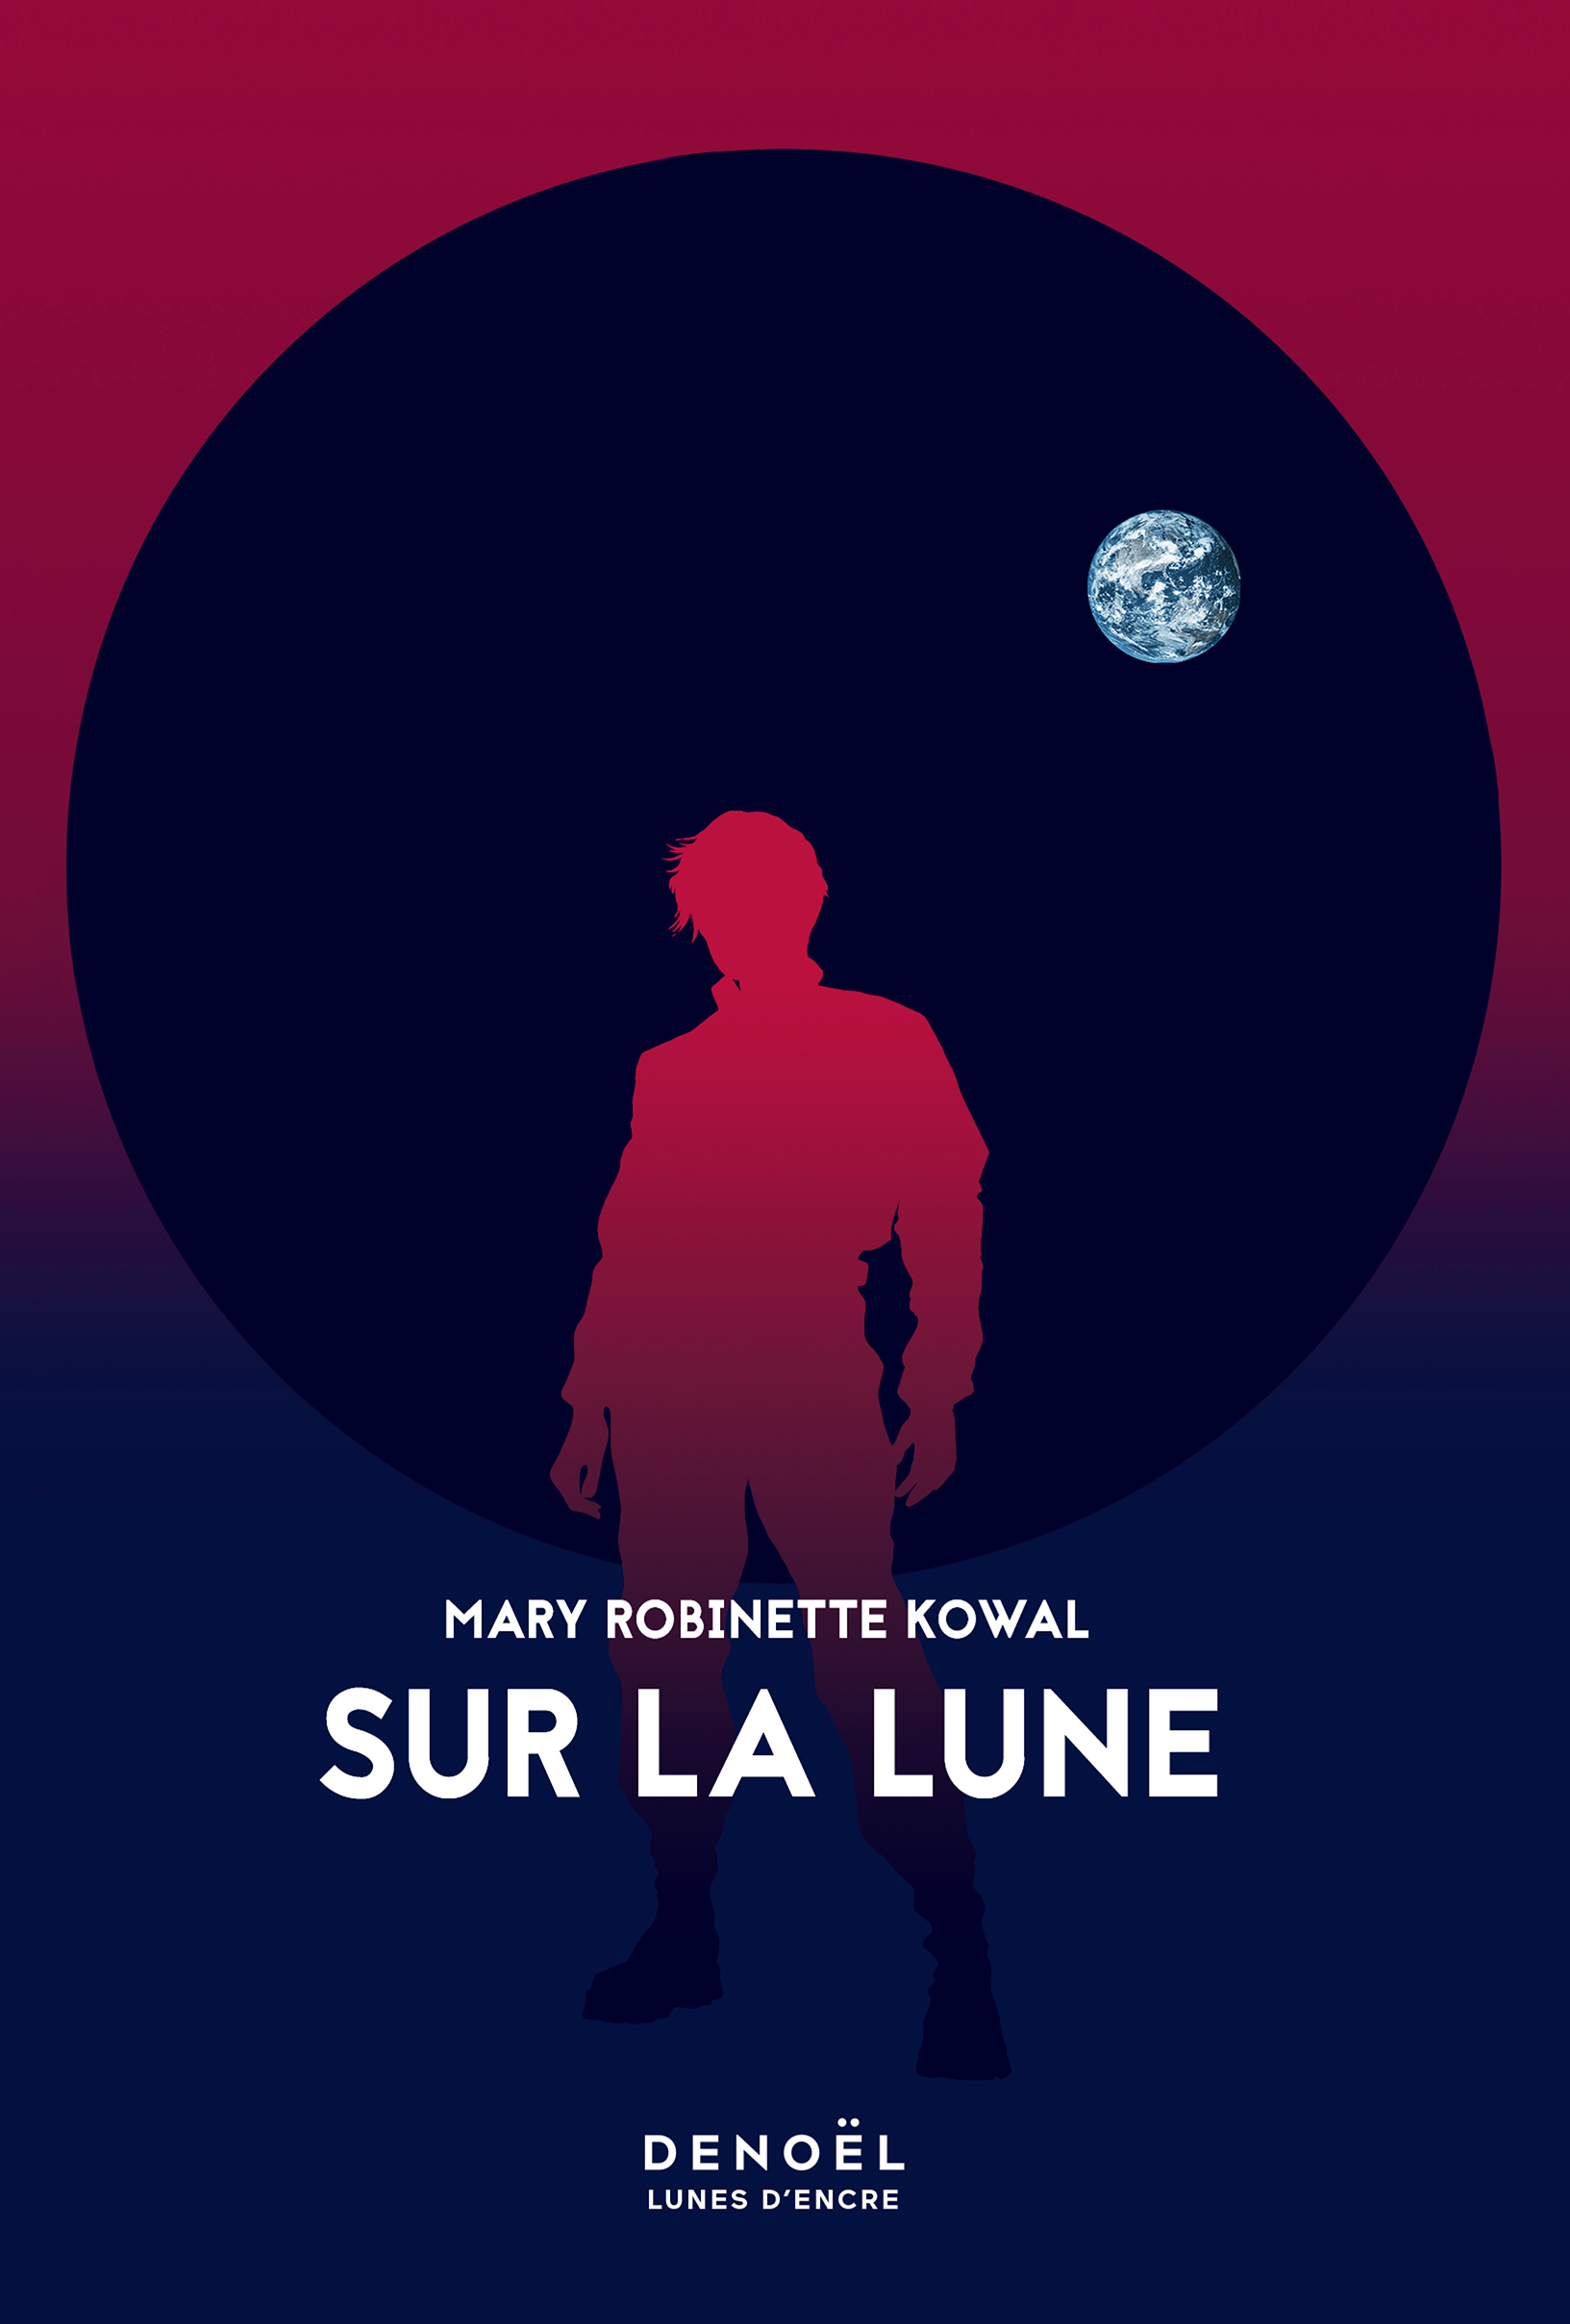 Couverture du livre "Sur la Lune" de Mary Robinette Kowal.